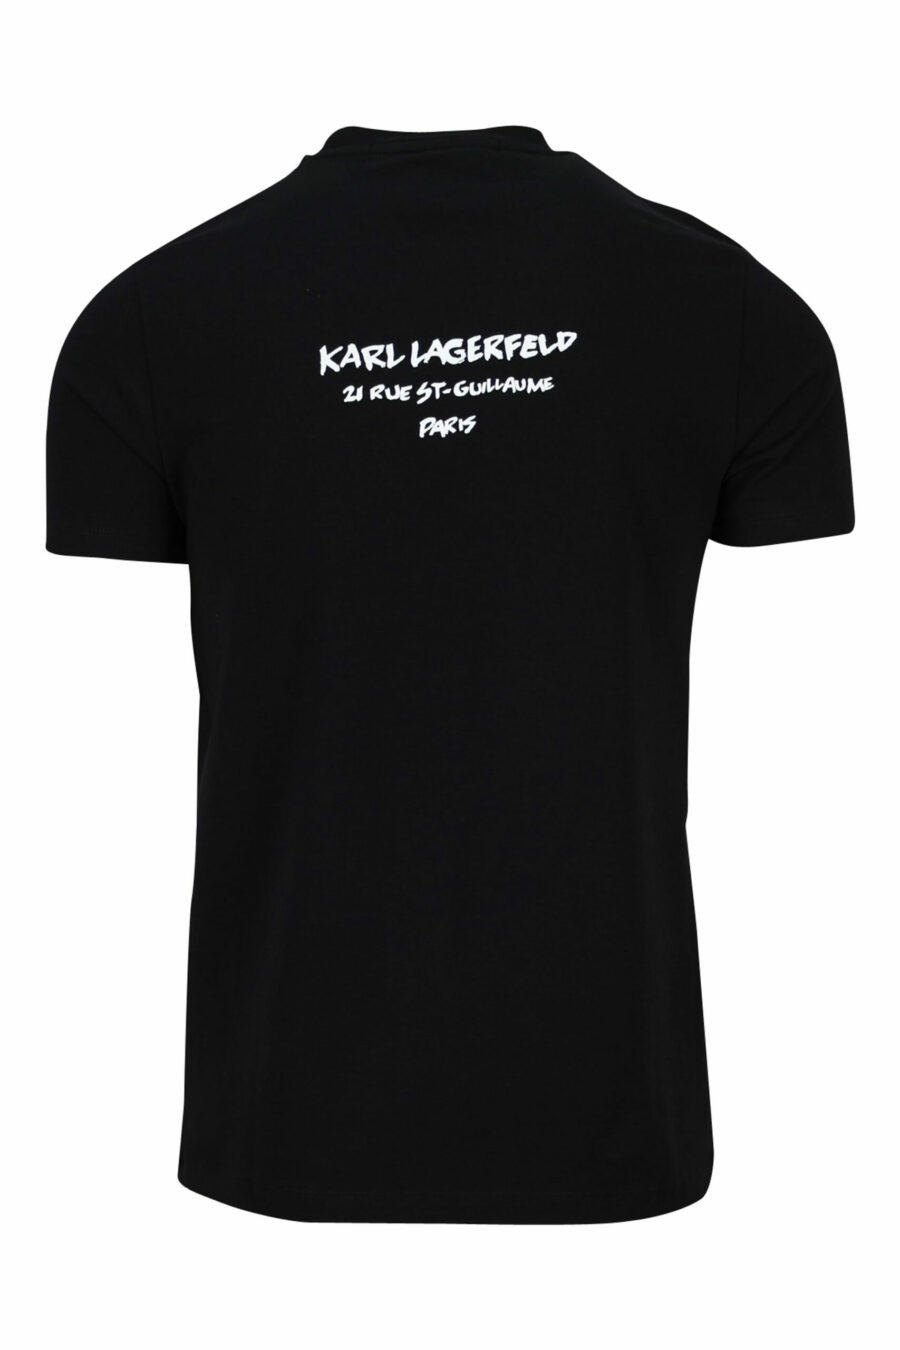 Schwarzes T-Shirt mit "karl" Tarnprofil - 4062226401906 1 skaliert